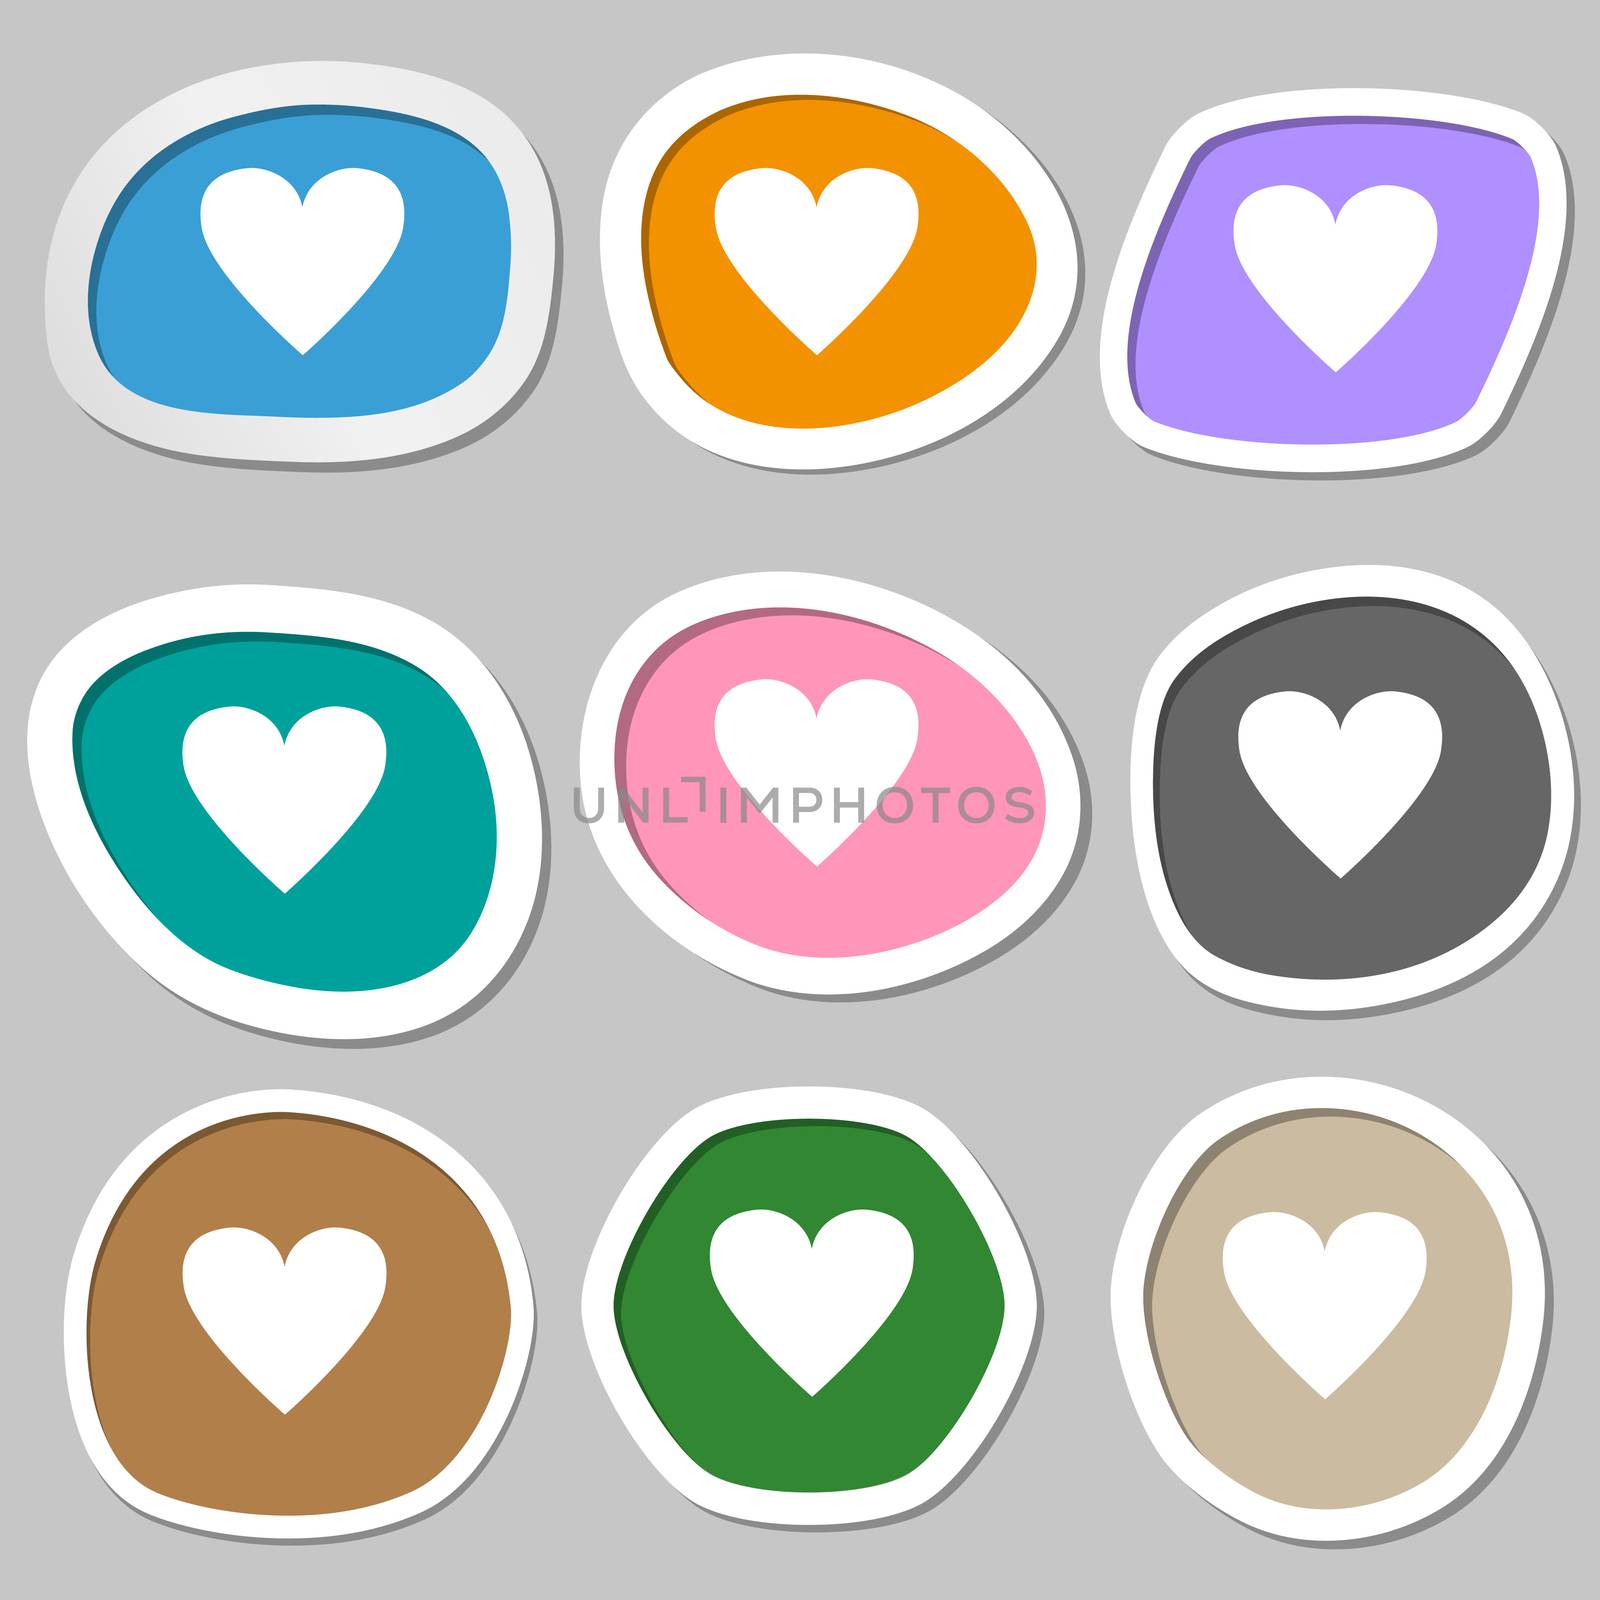 Heart sign icon. Love symbol. Multicolored paper stickers. illustration